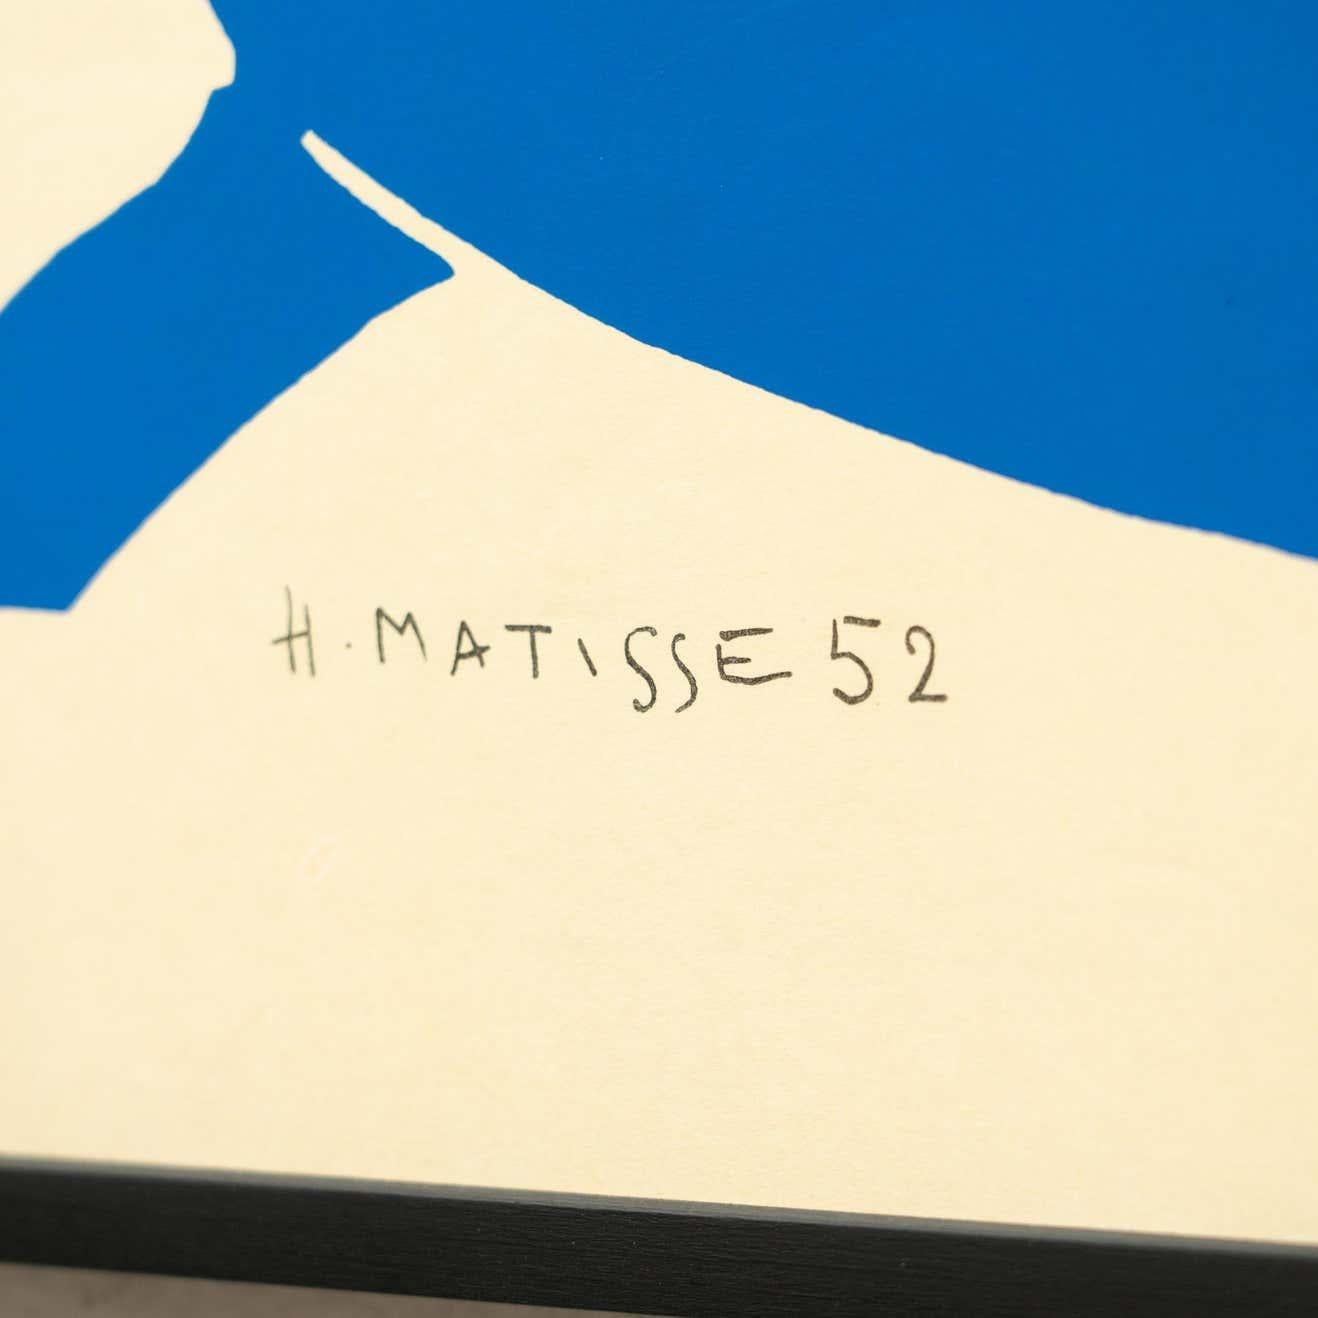 Framed After Henri Matisse Cut Out Blue Lithograph Nu Bleu II 2